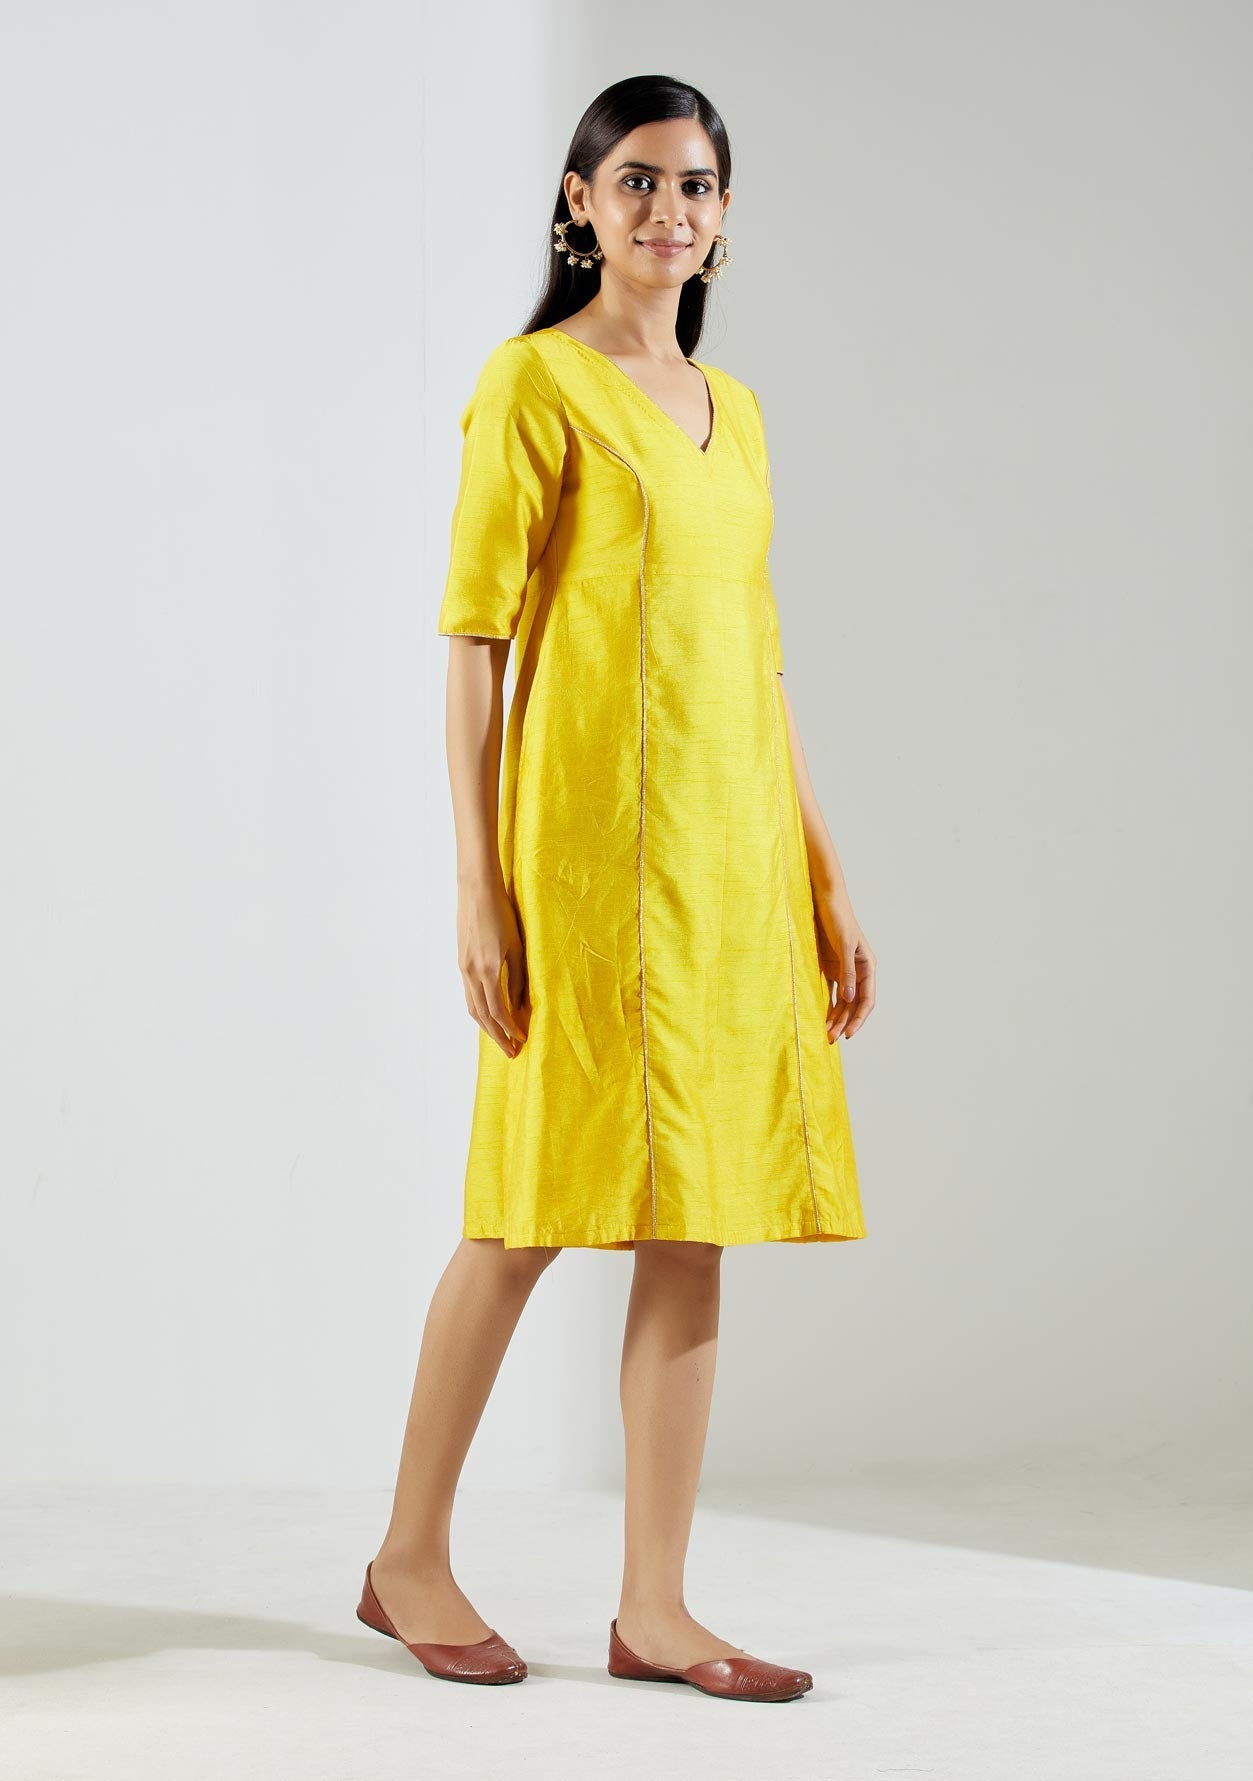 Yellow Markab Kurta Dress with Pant (Set of 2) - The Indian Cause